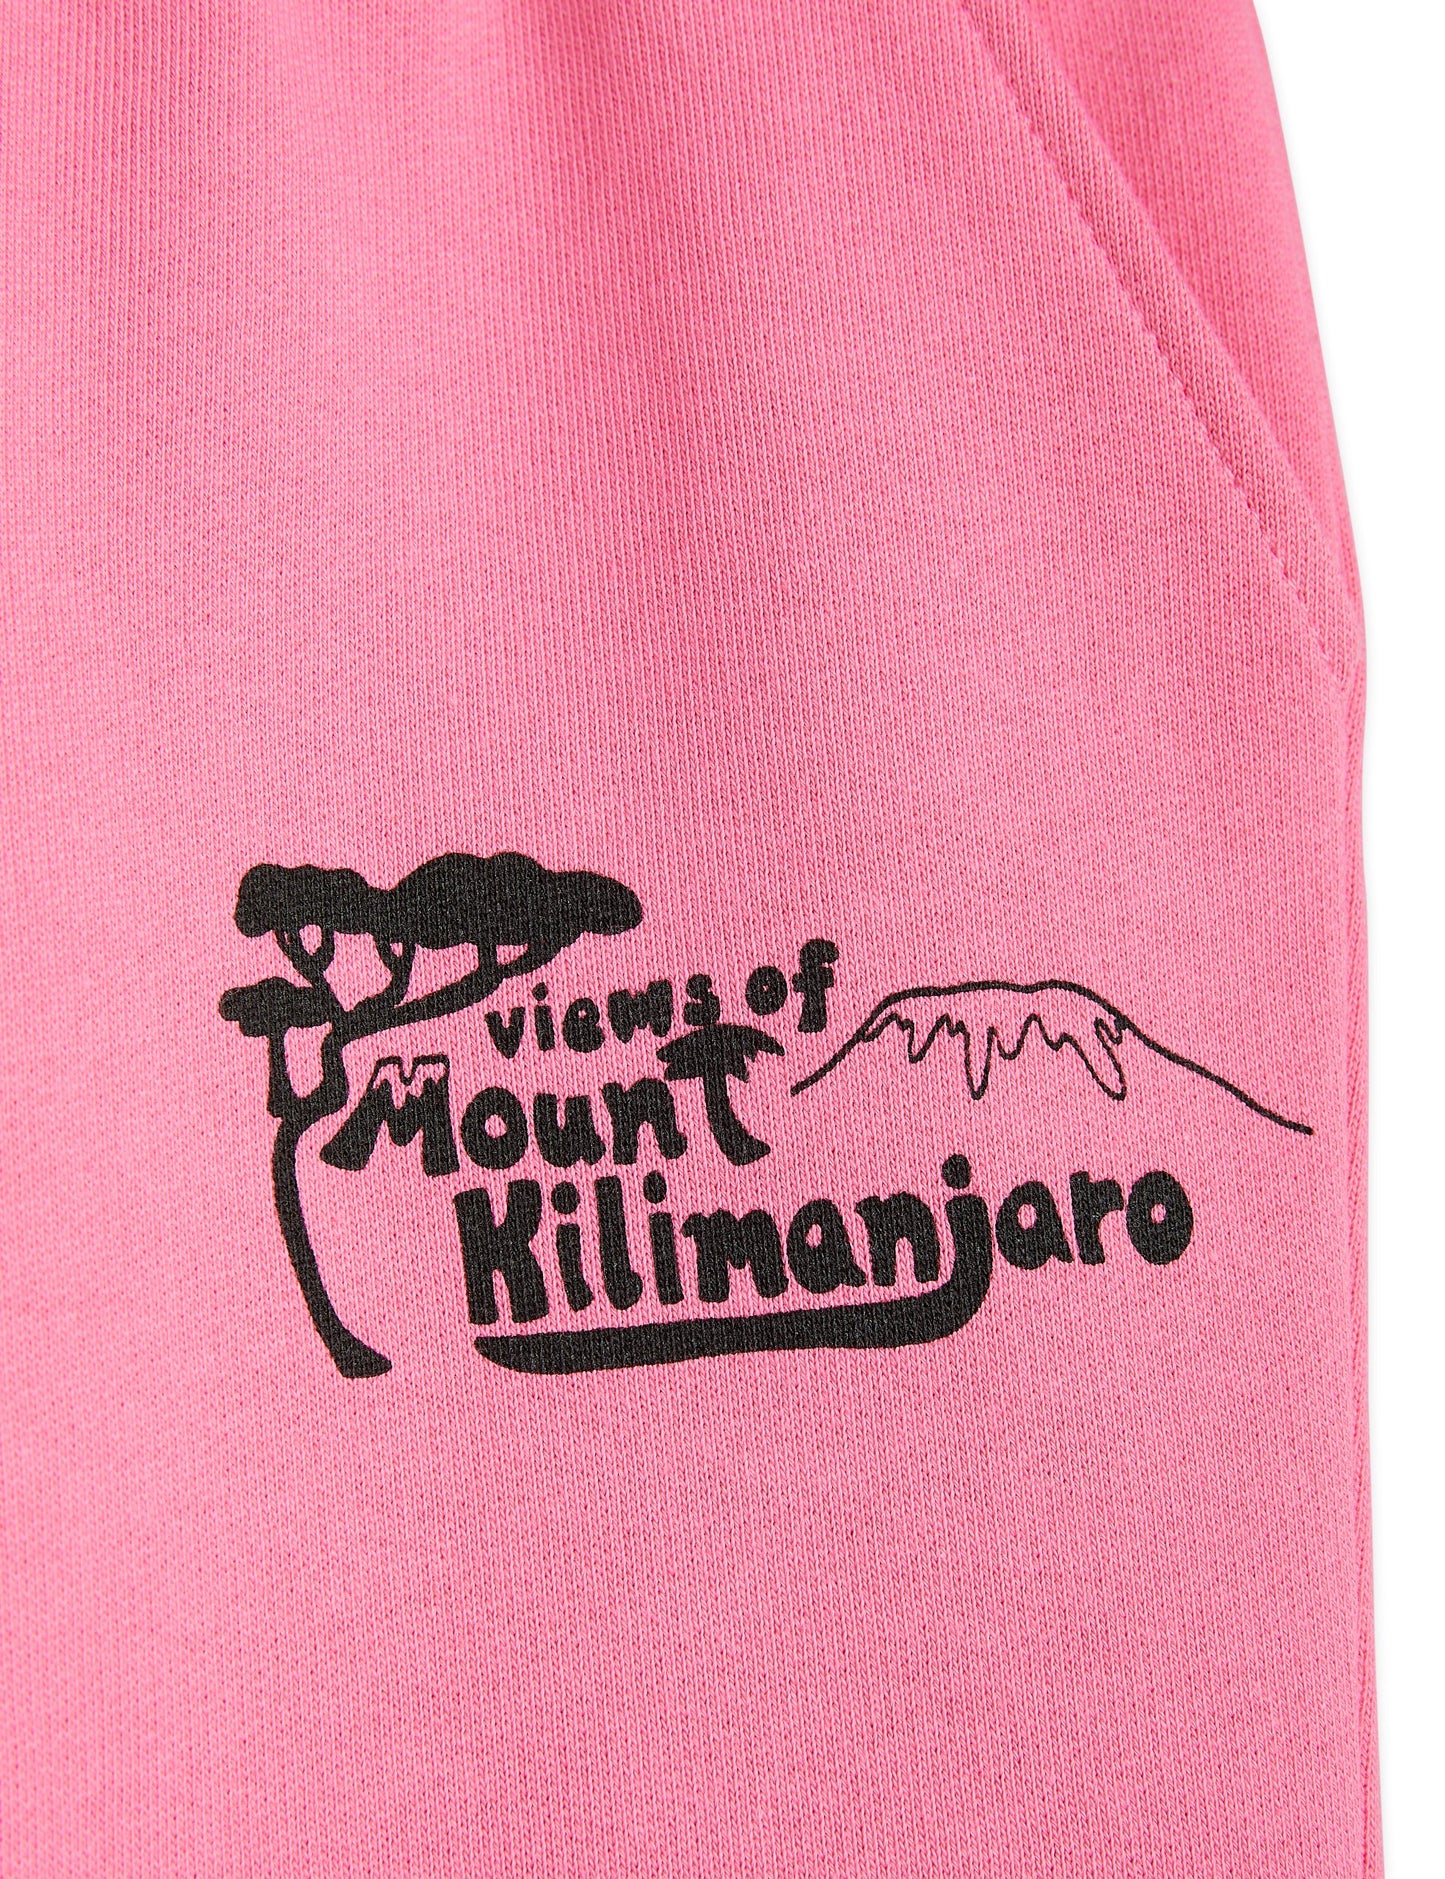 Mt Kilimanjaro sweatpants